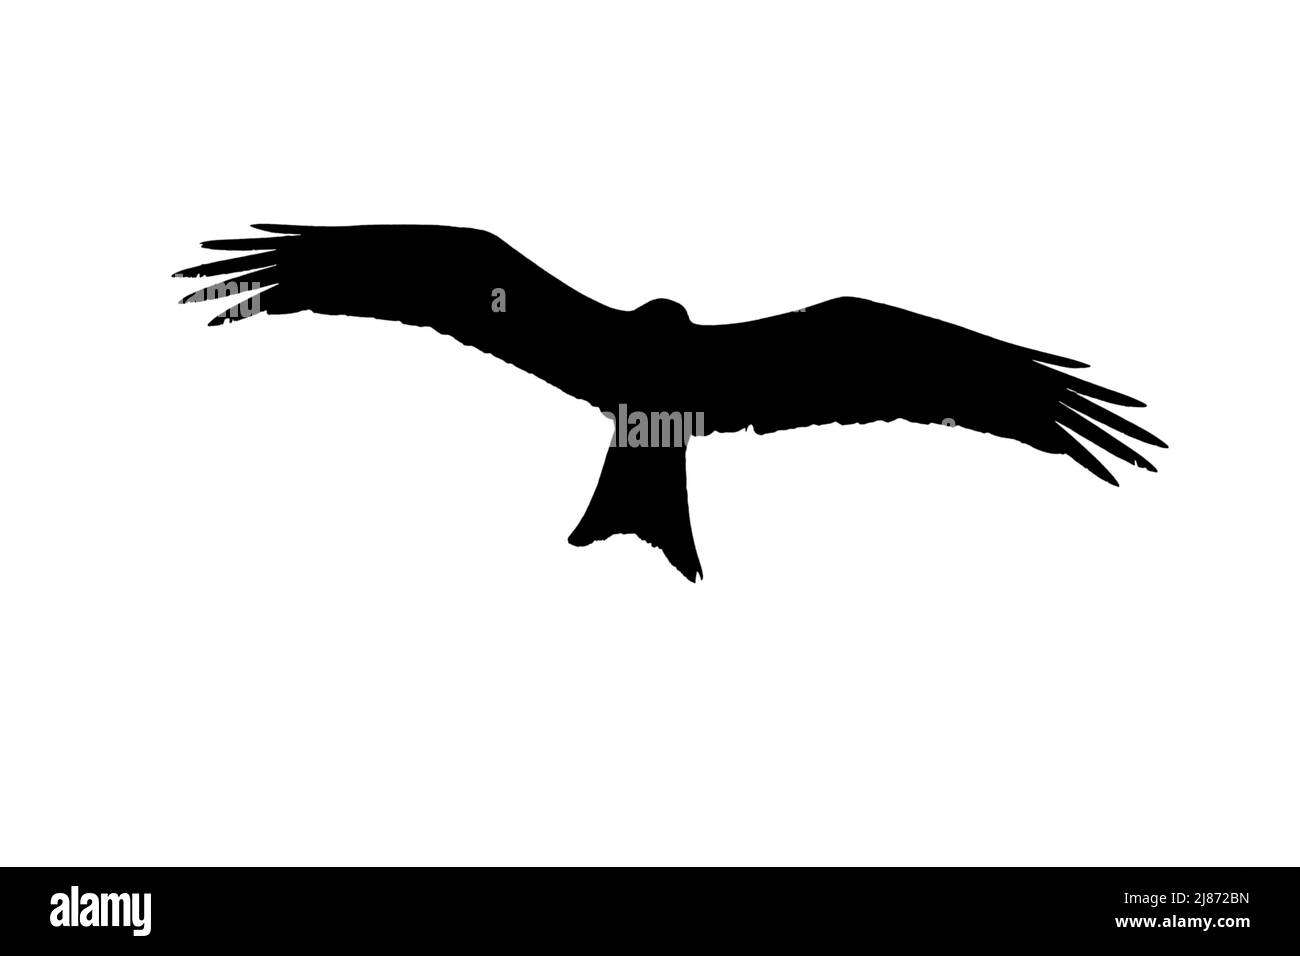 Silhouette de cerf-volant rouge (Milvus milvus) en vol entourée d'un fond blanc pour montrer les formes des ailes et de la queue Banque D'Images